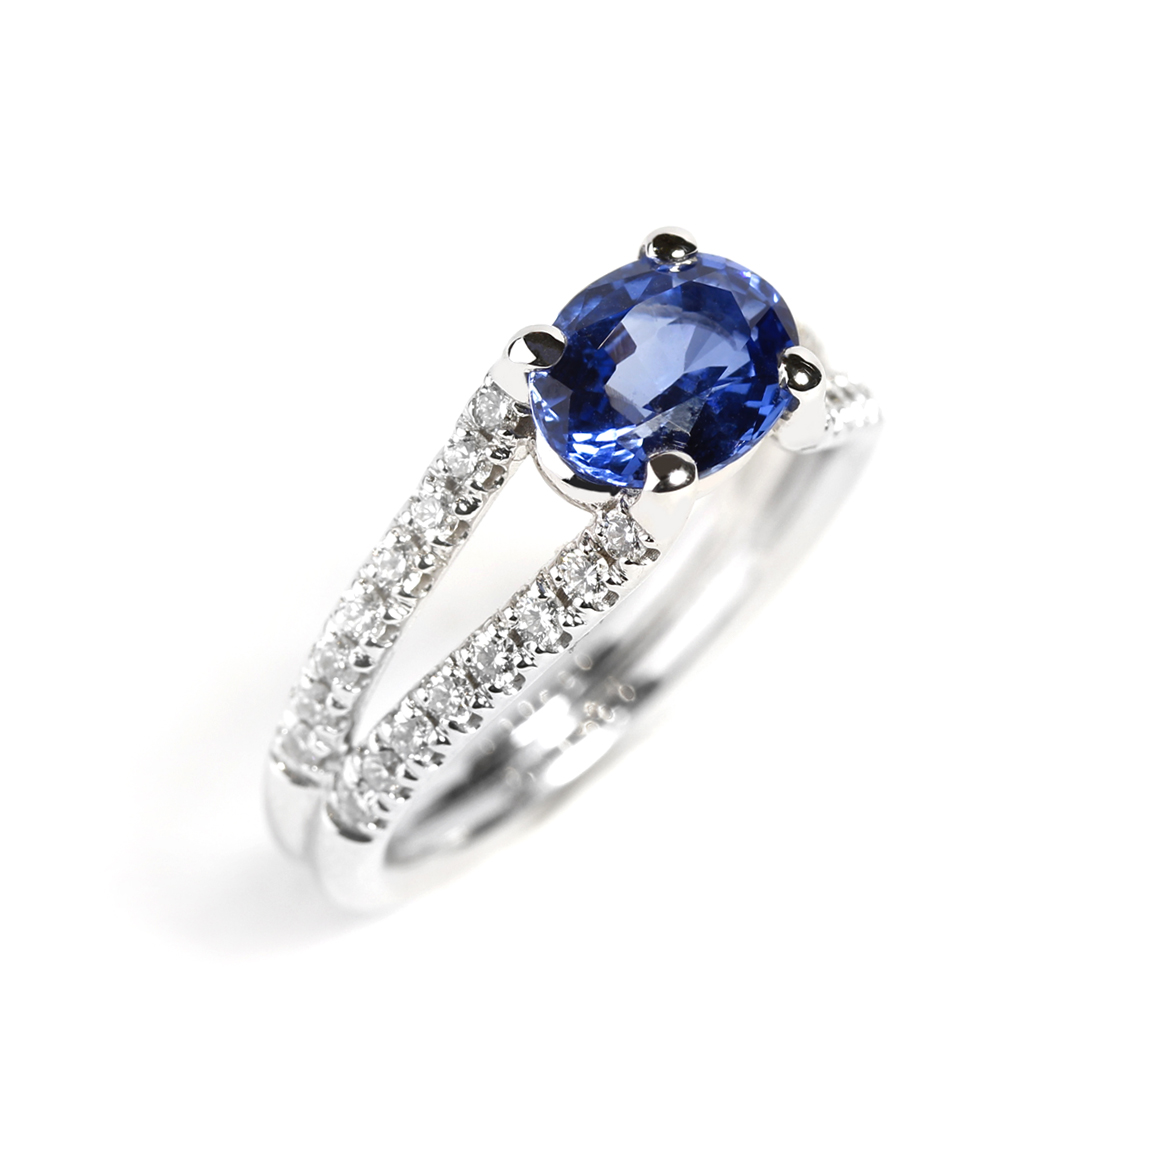 Bague saphir et diamants sur un anneau dédoublé habillé de diamants Compagnie des Gemmes Paris